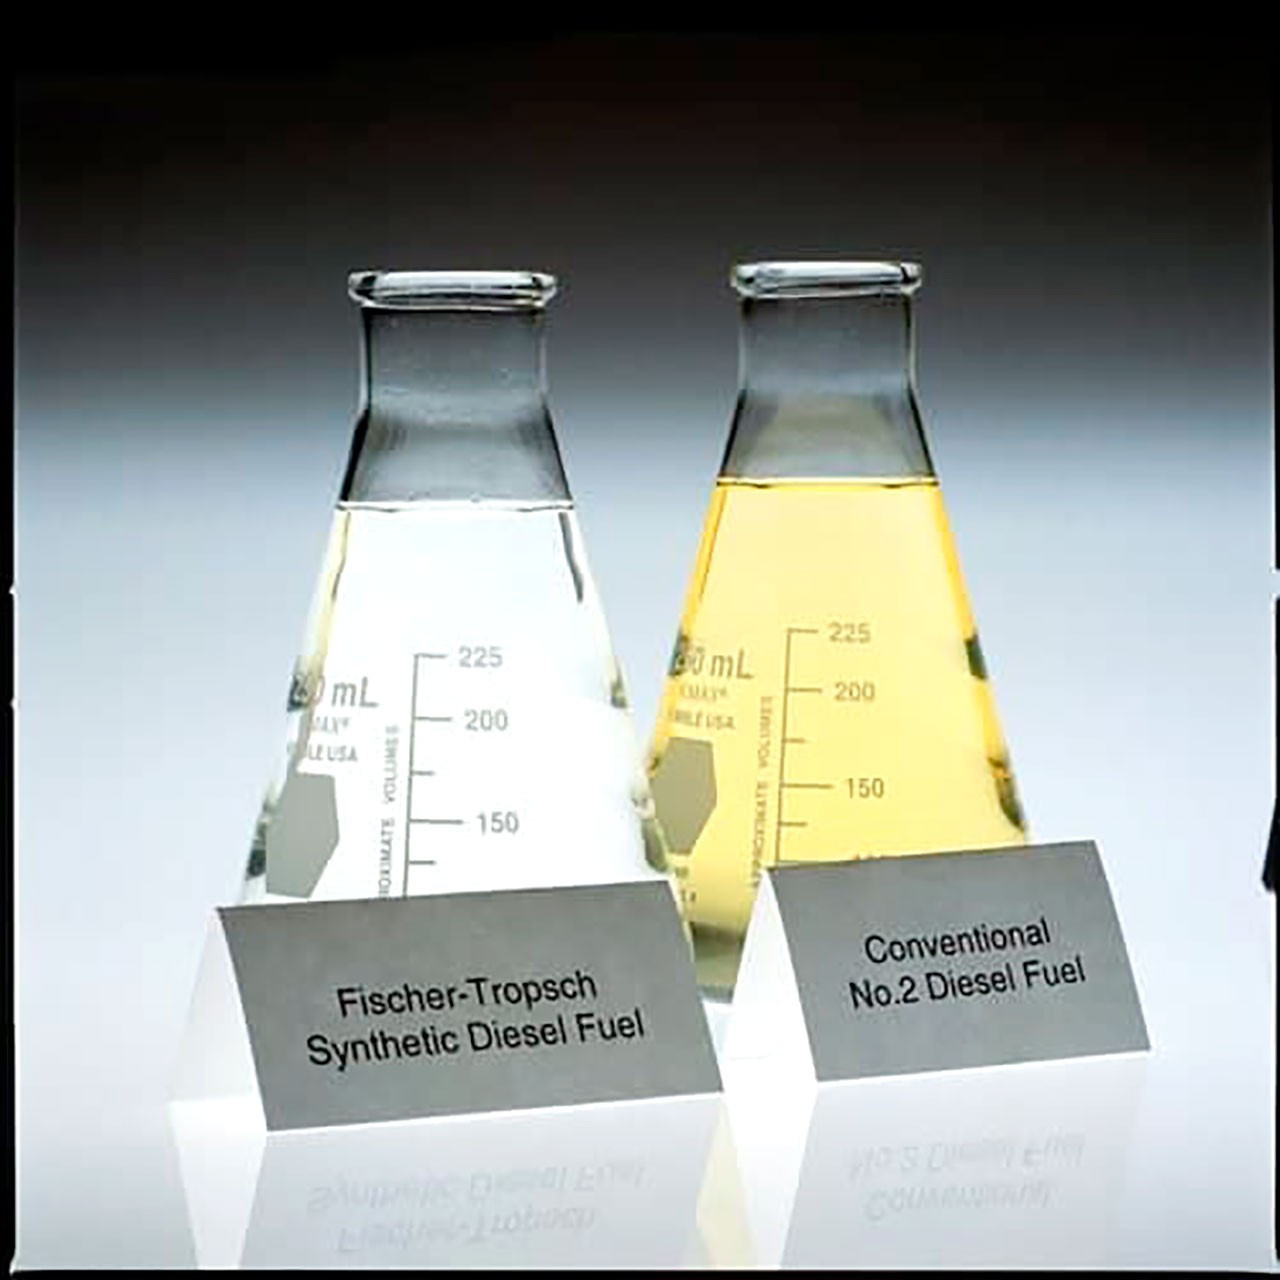 Syntetyczny metan: wizualne porównanie syntetycznego paliwa FT z tradycyjnym paliwem: to pierwsze jest wyraźnie czystsze, przezroczyste jak woda ze względu na prawie całkowity brak siarki i związków aromatycznych